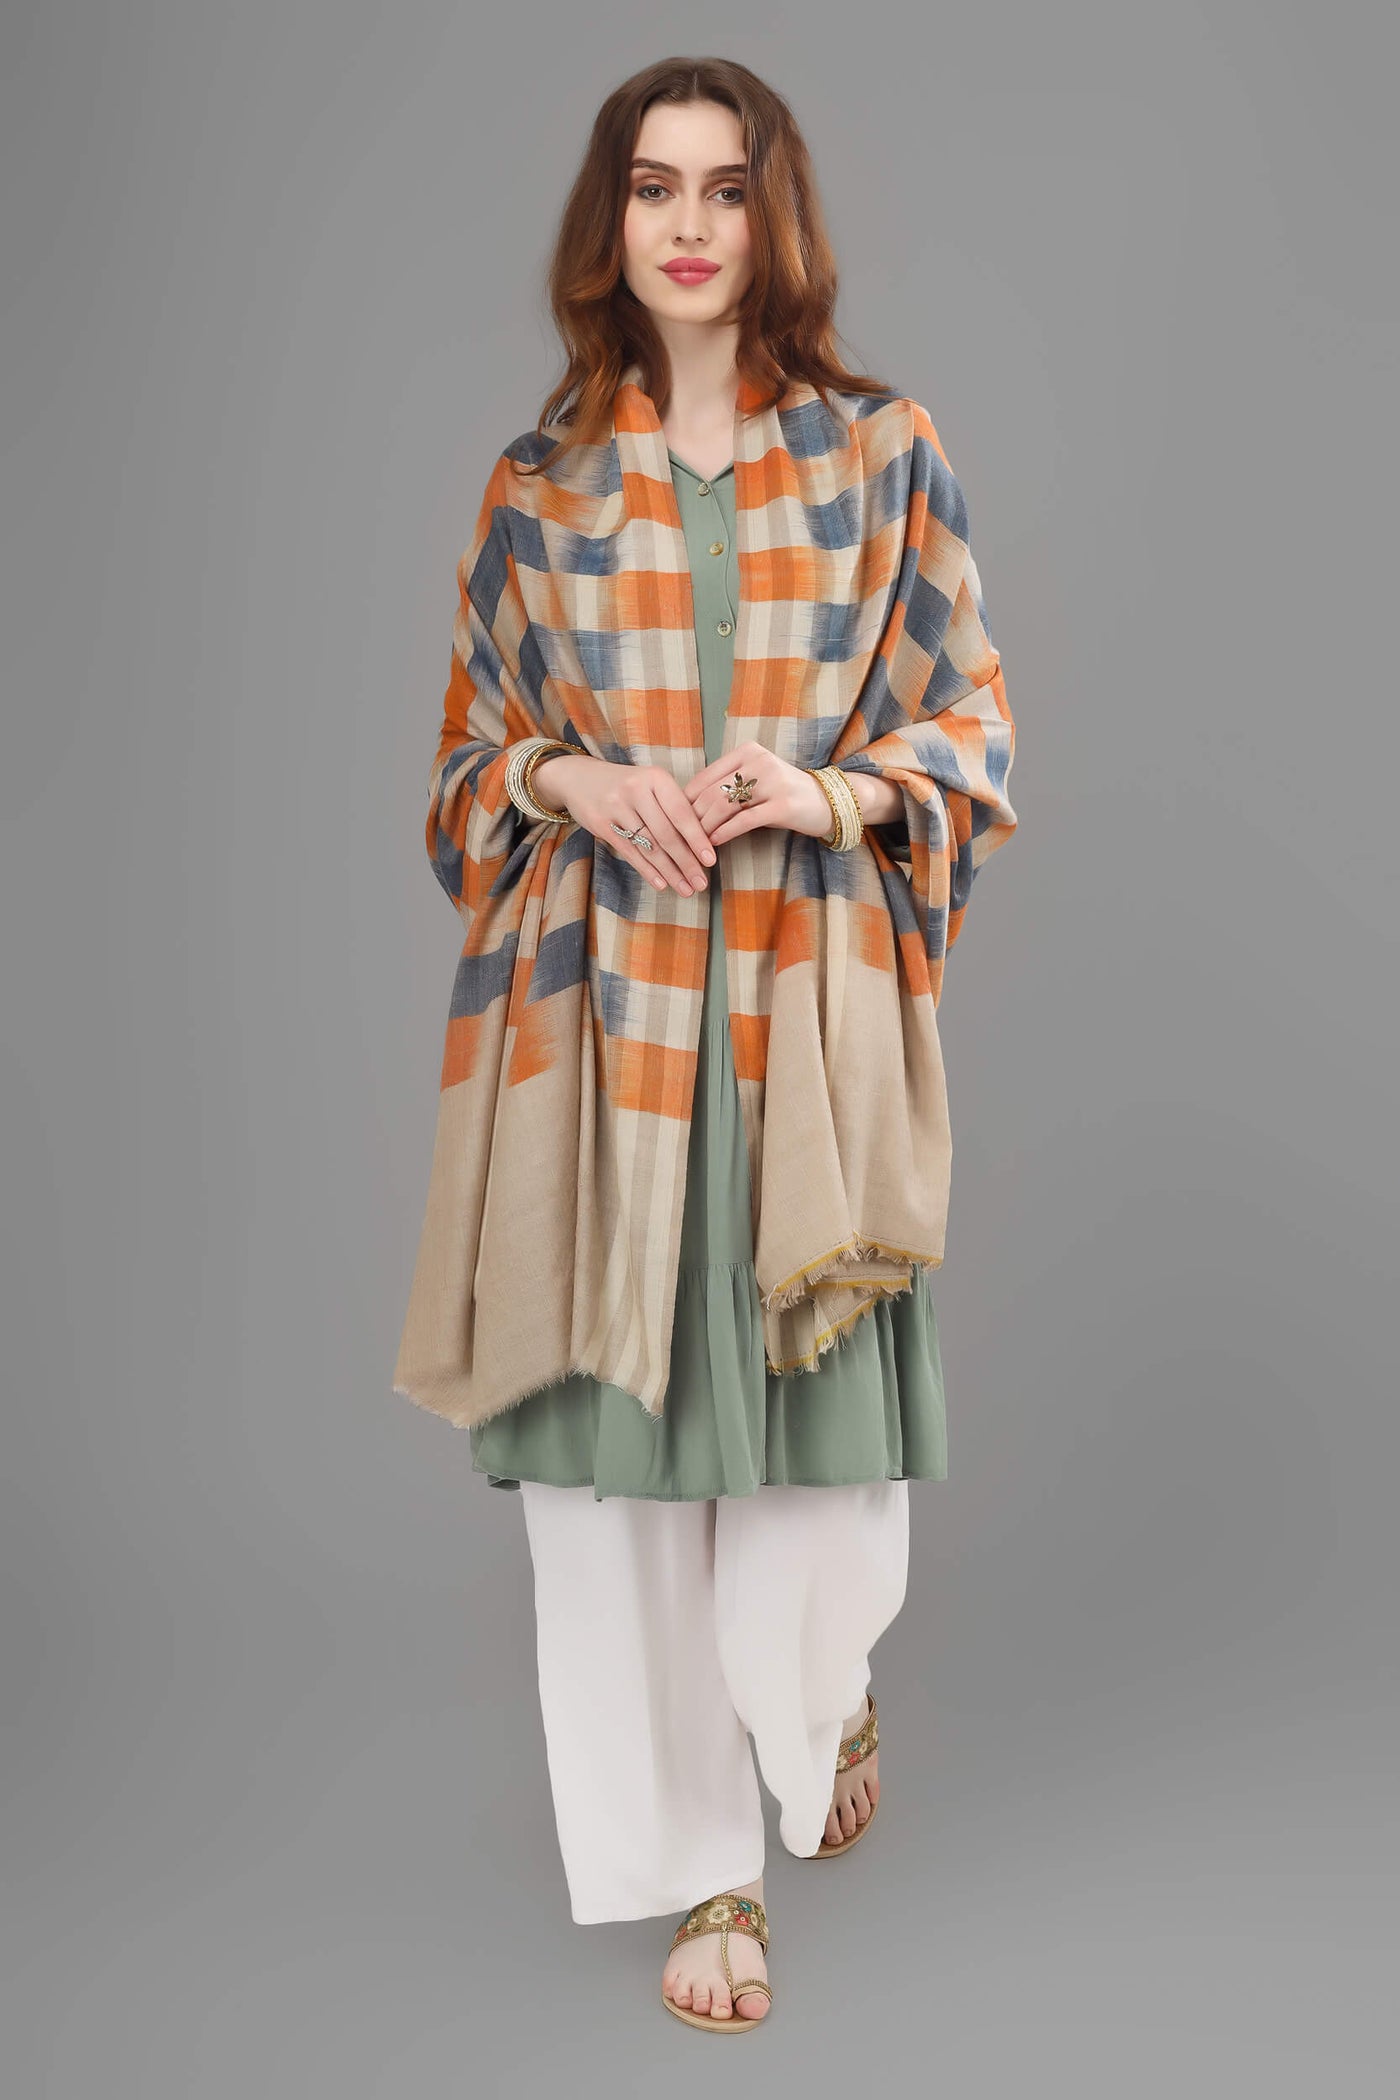 KASHMIR - Blue orange Ikkat  design pashmina shawl